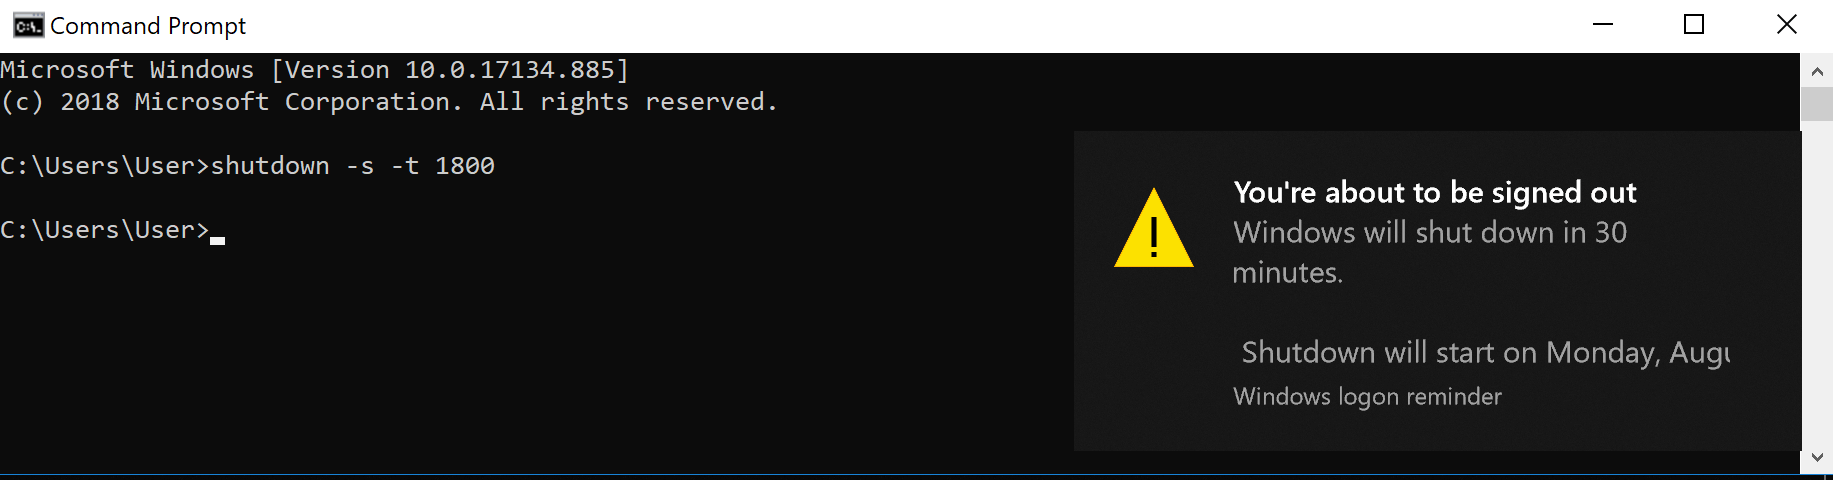 Sử dụng CMD để hẹn giờ tắt máy tính Windows 10 2